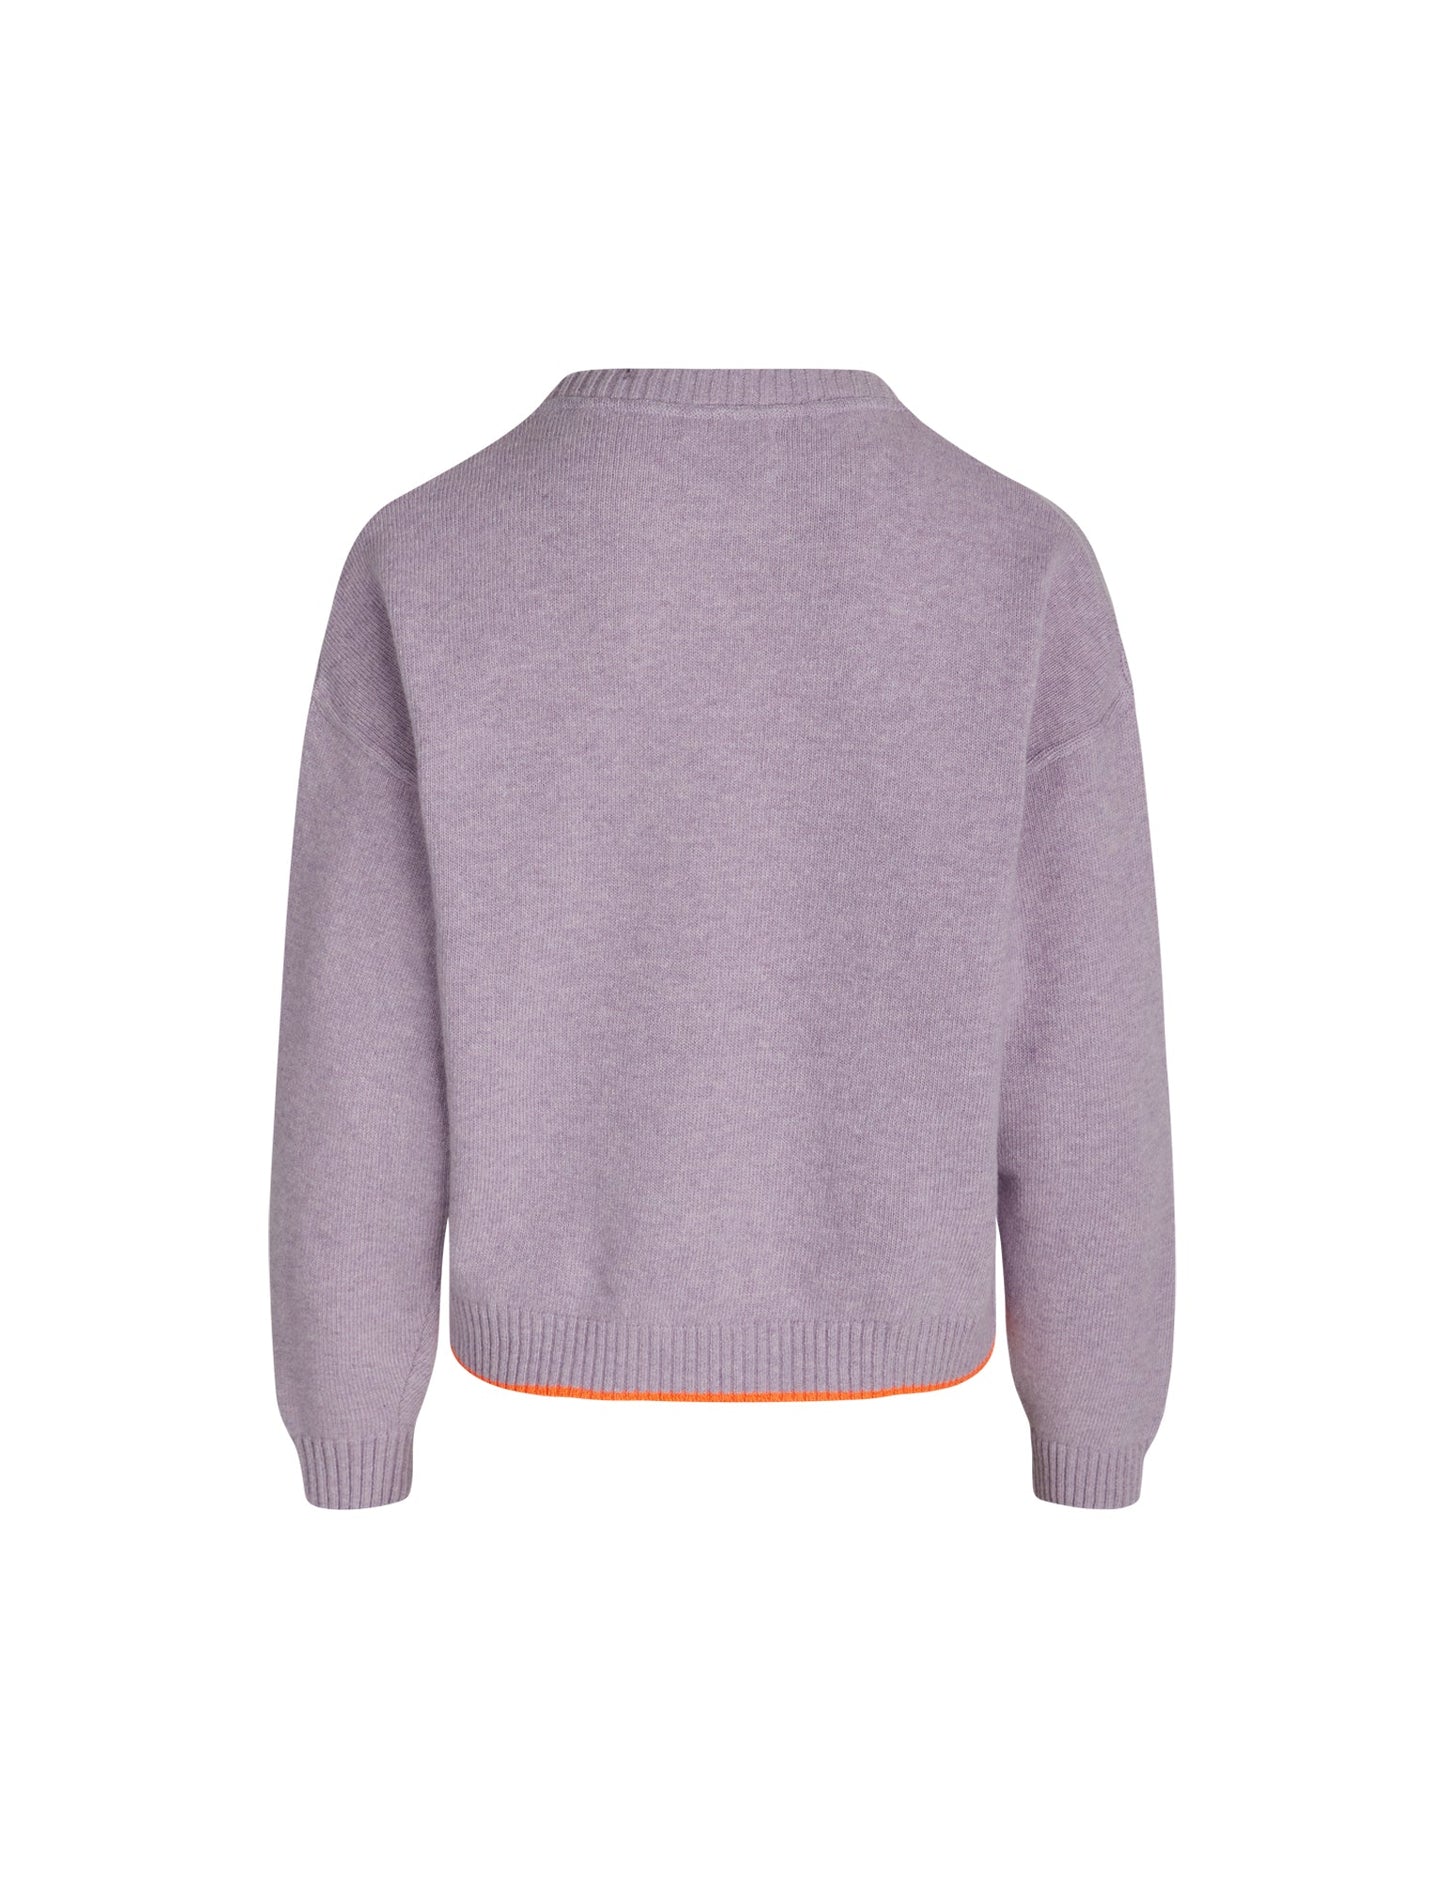 Recy Soft Knit Tilona Plain Sweater,  Pastel Lilac